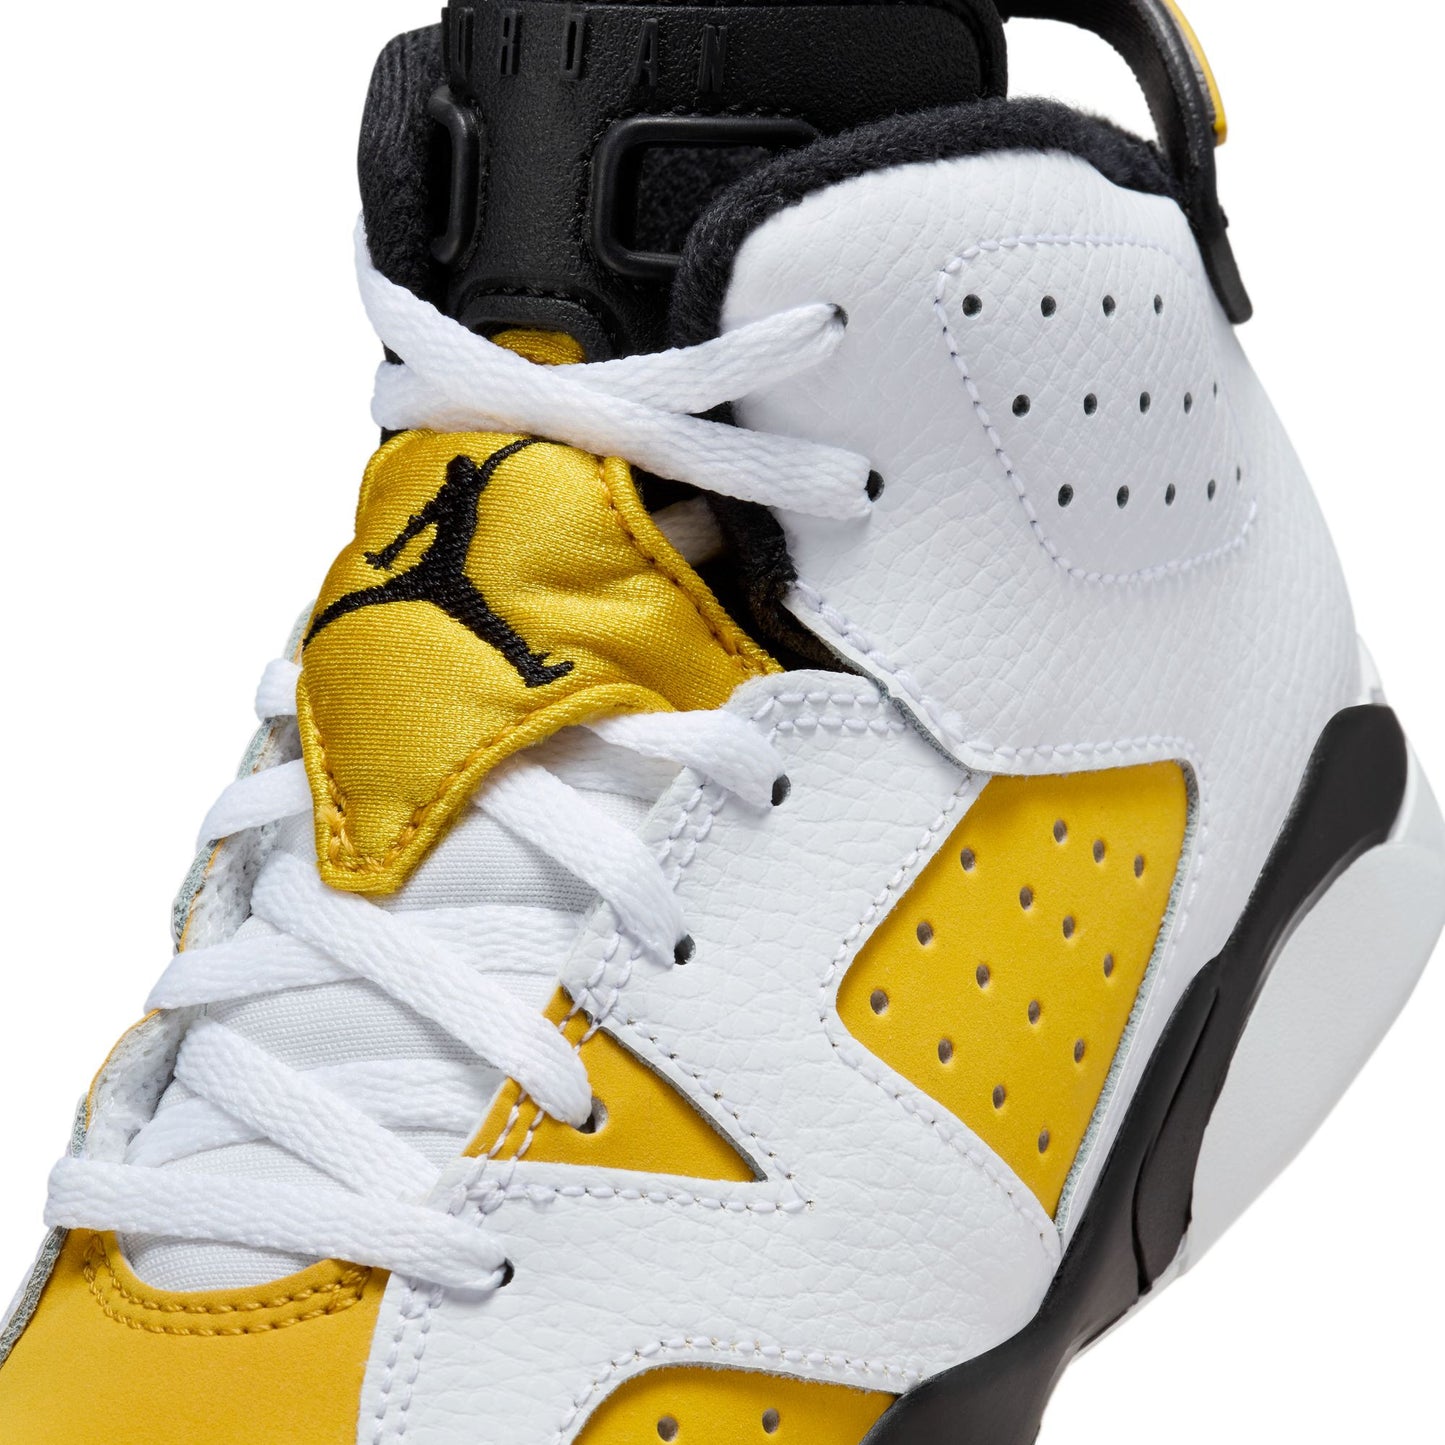 Air Jordan 6 Retro "Yellow Ochre" (PS)  - DV3605-170